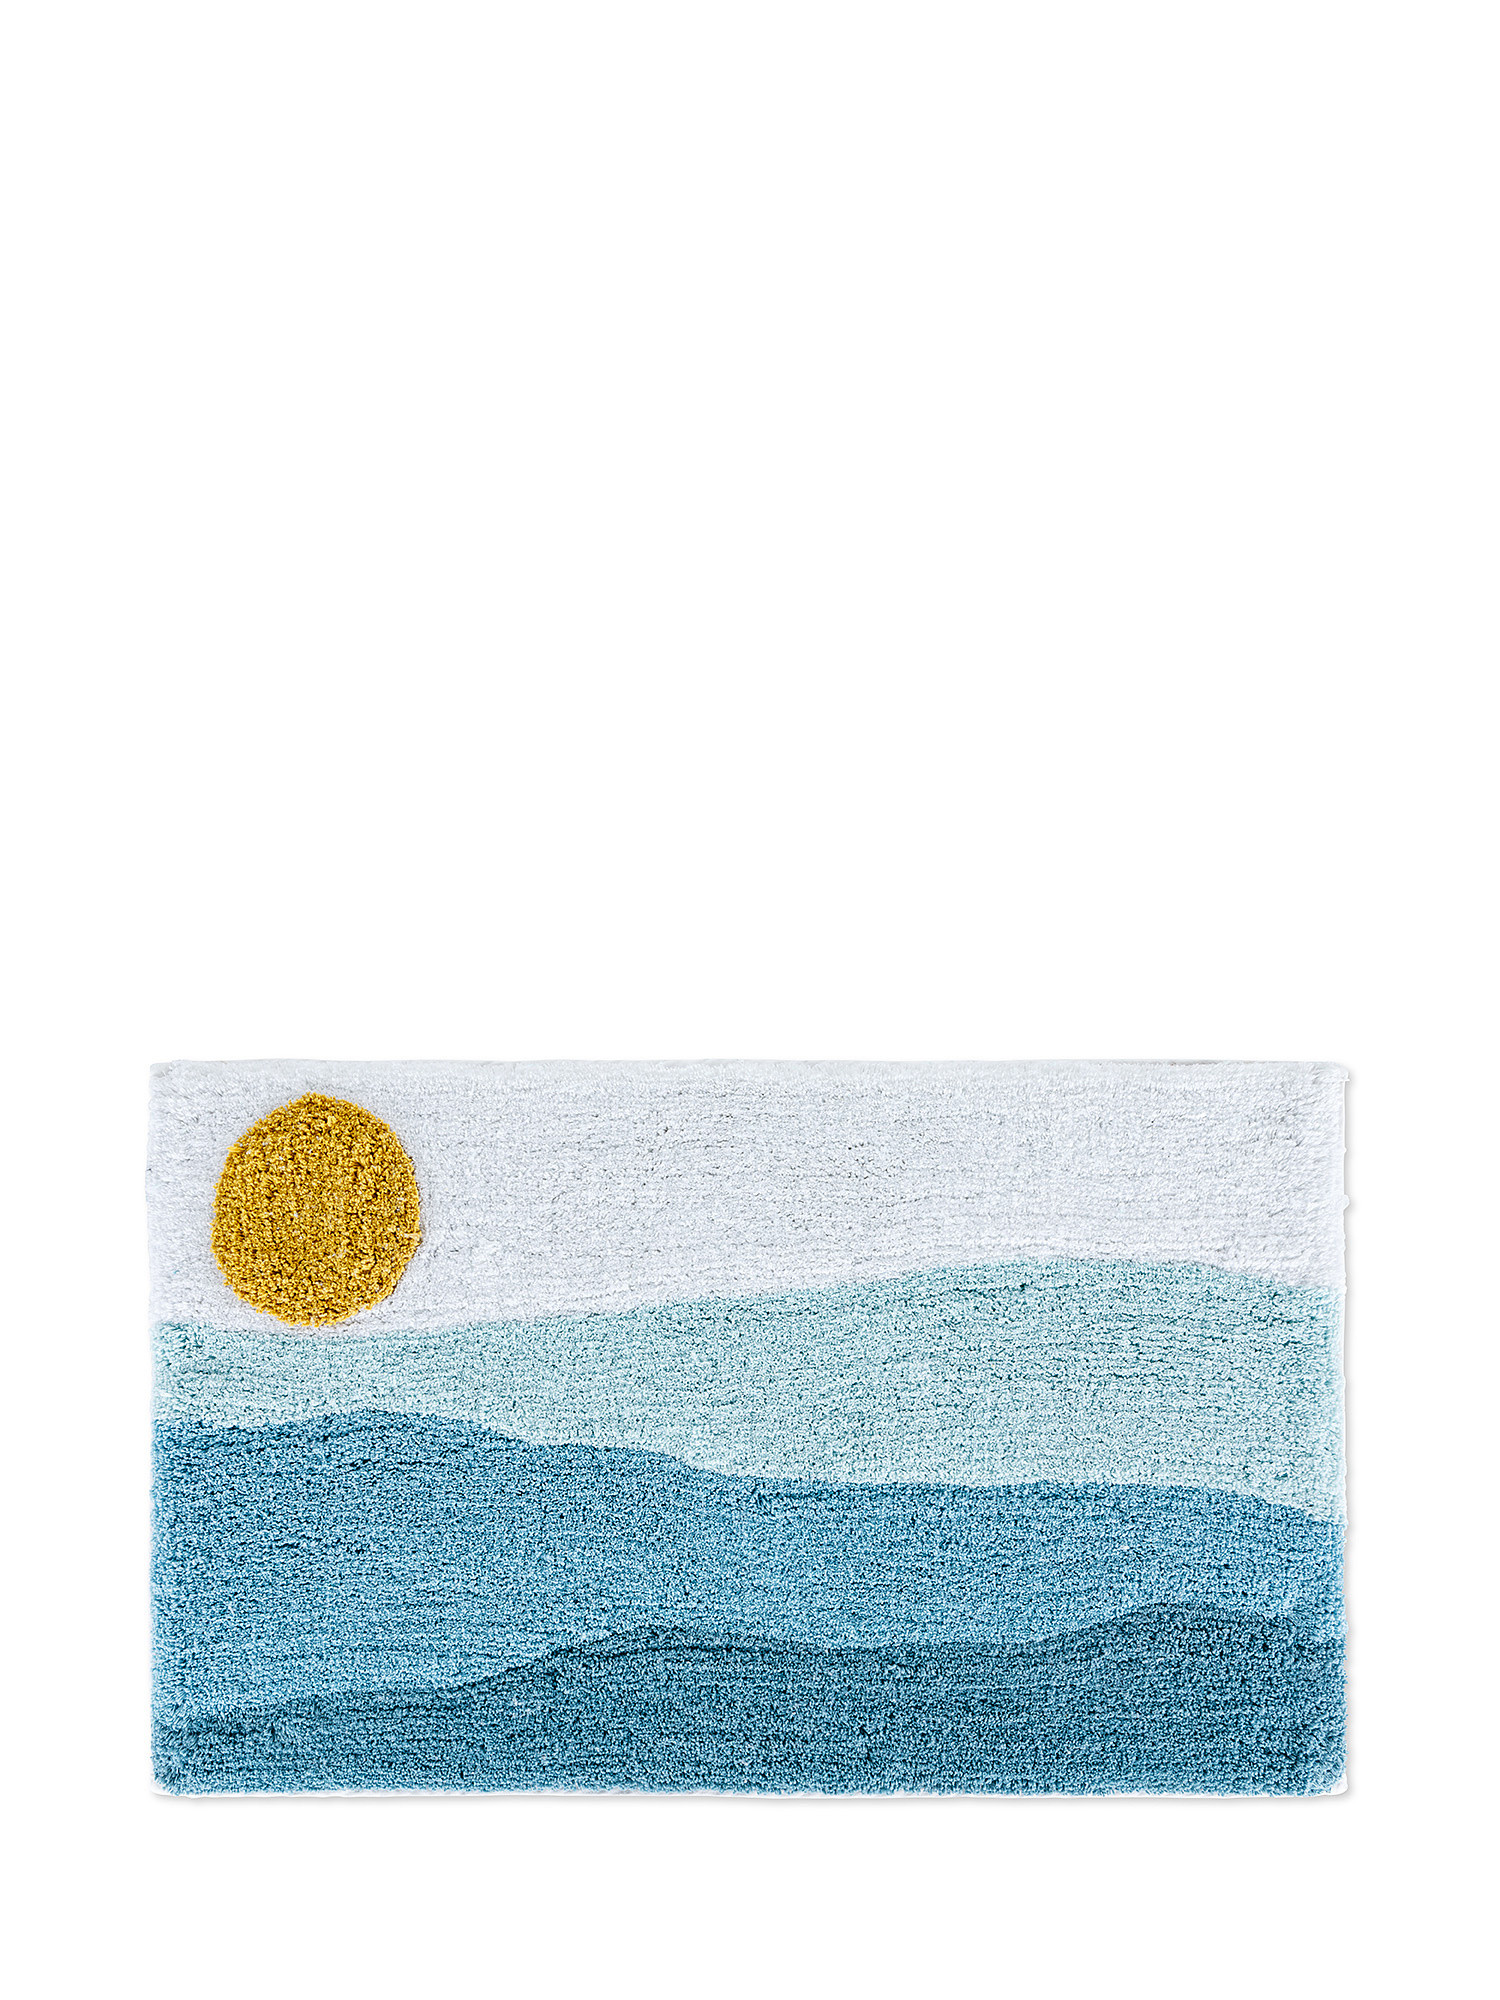 Tappeto bagno cotone motivo alba, Azzurro, large image number 0